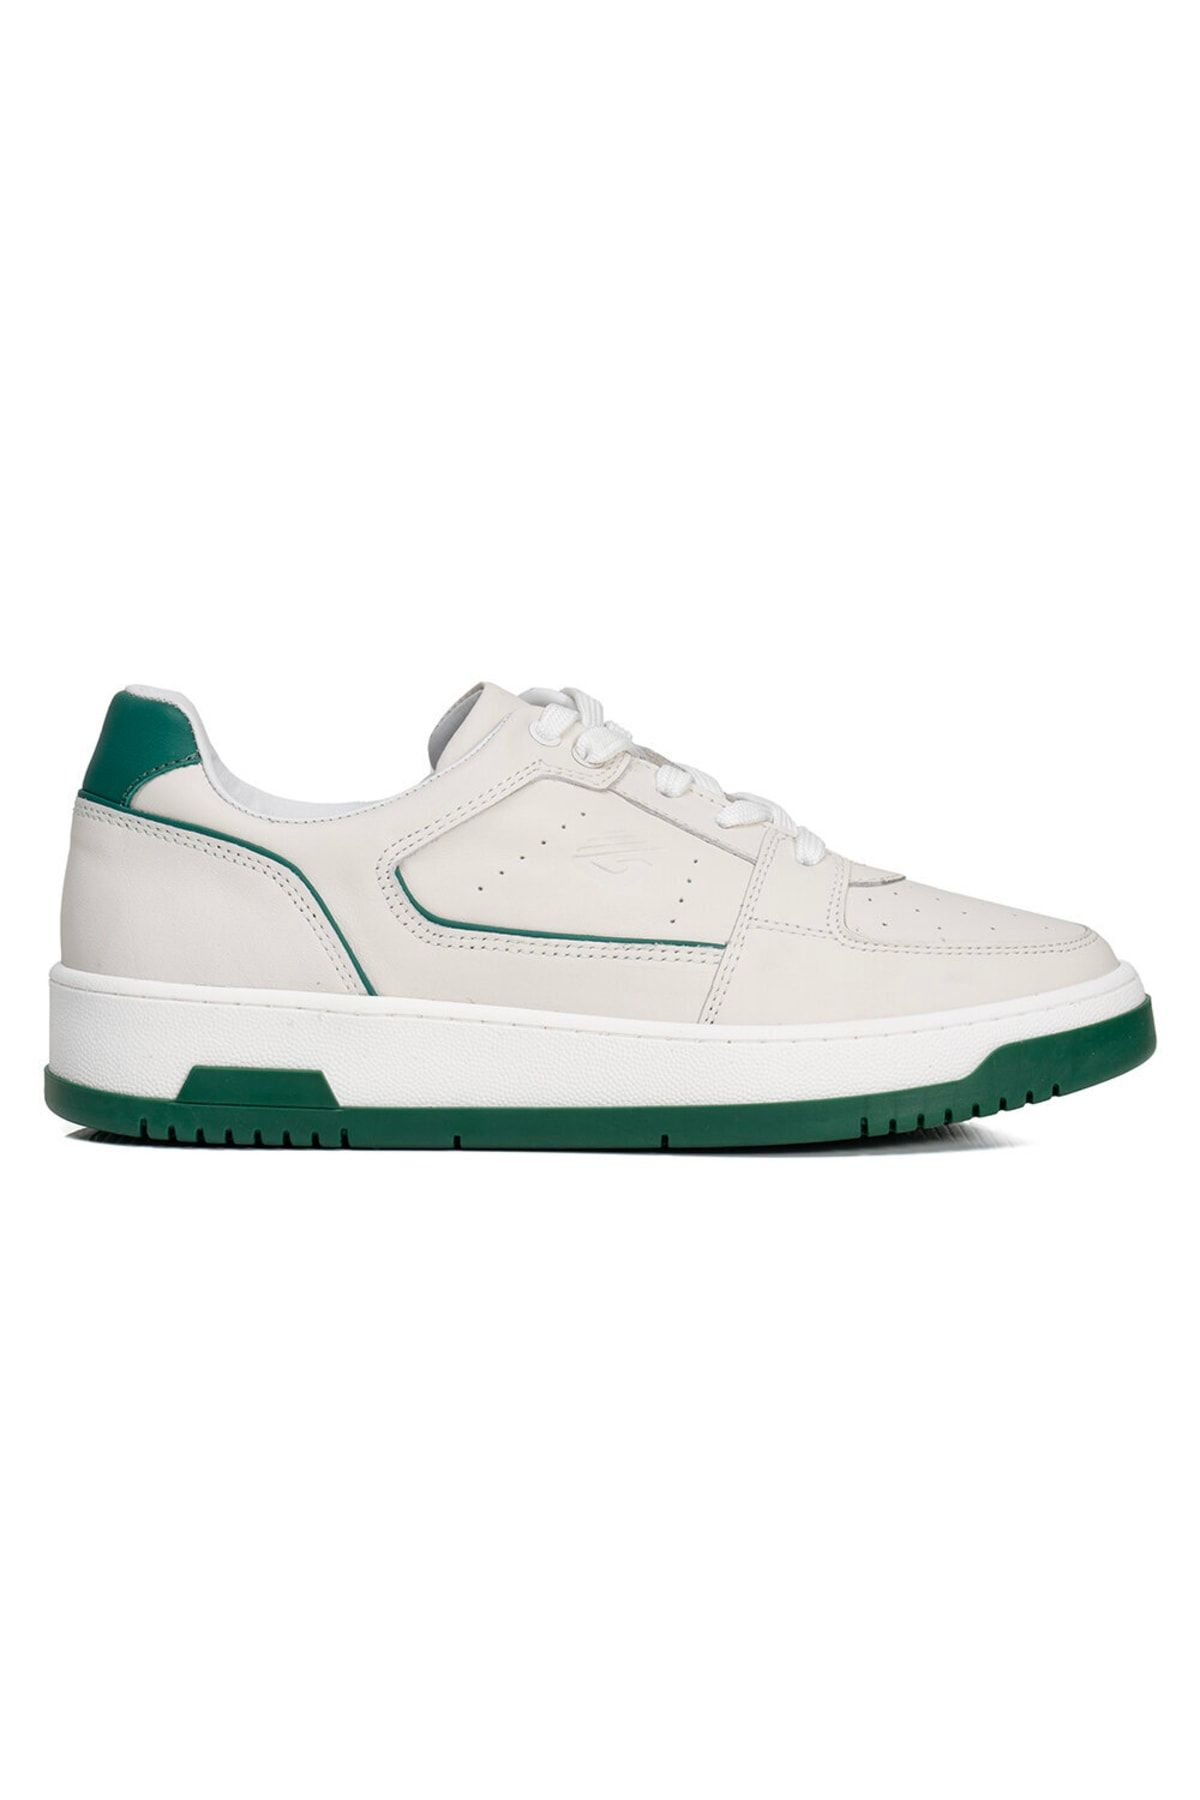 Greyder Kadın Beyaz Yeşil Hakiki Deri Sneaker Ayakkabı 3y2sa32311